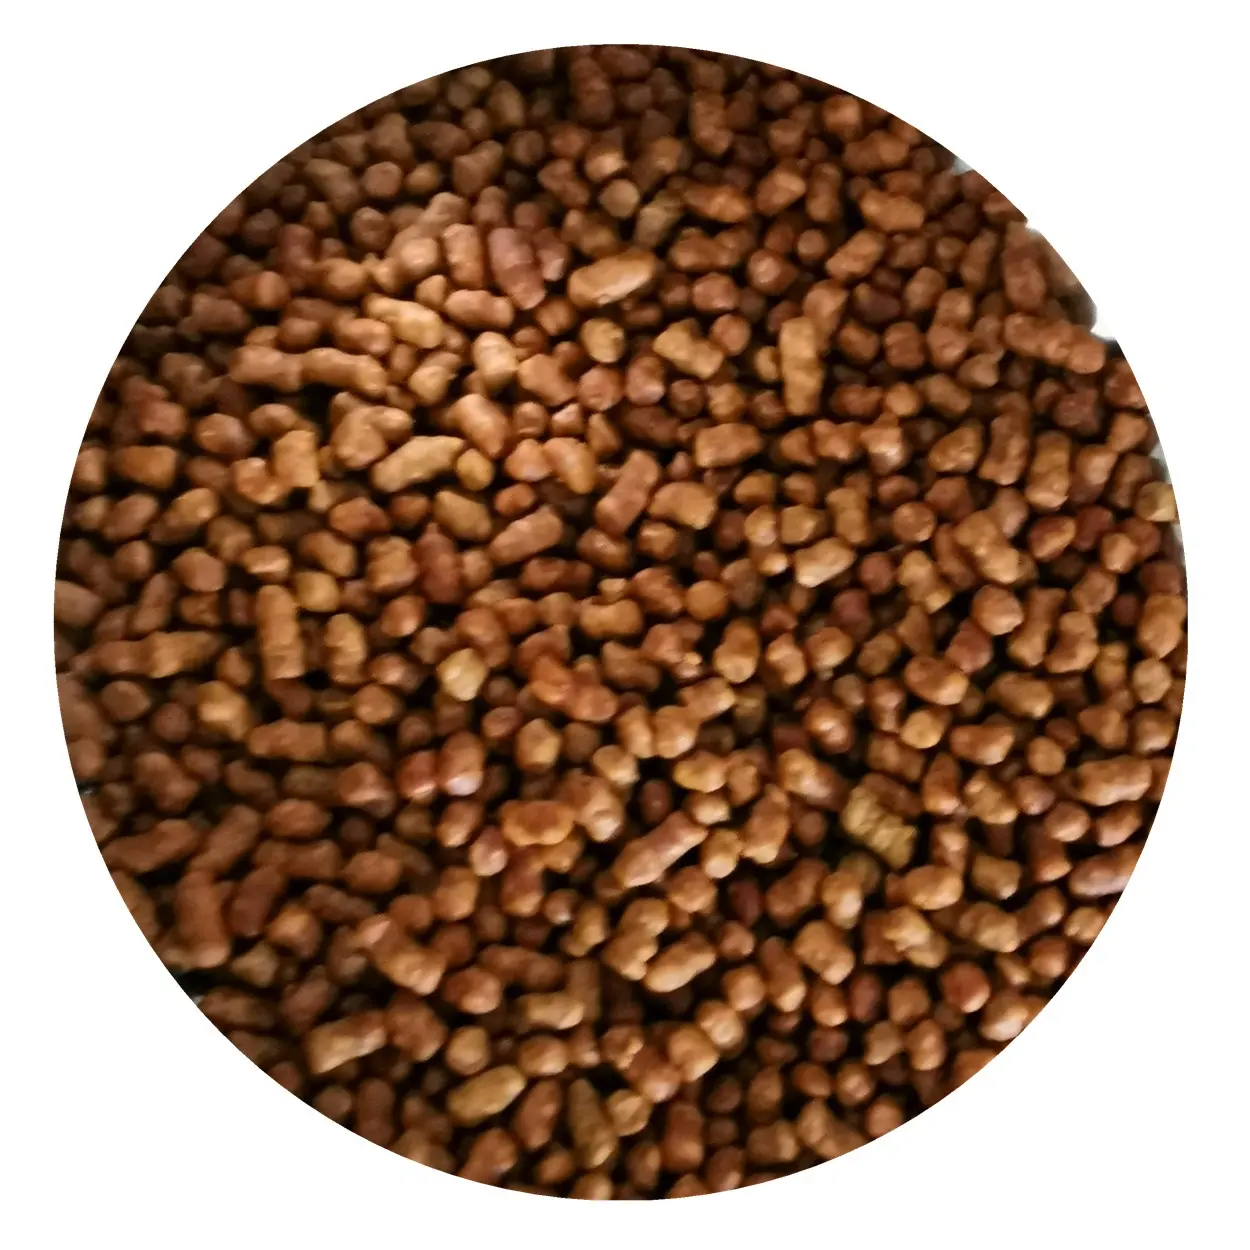 Tè di grano saraceno tartaro nero biologico senza glutine prezzo per il mercato russo Logo personalizzato tè di grano saraceno In magazzino grano saraceno nero